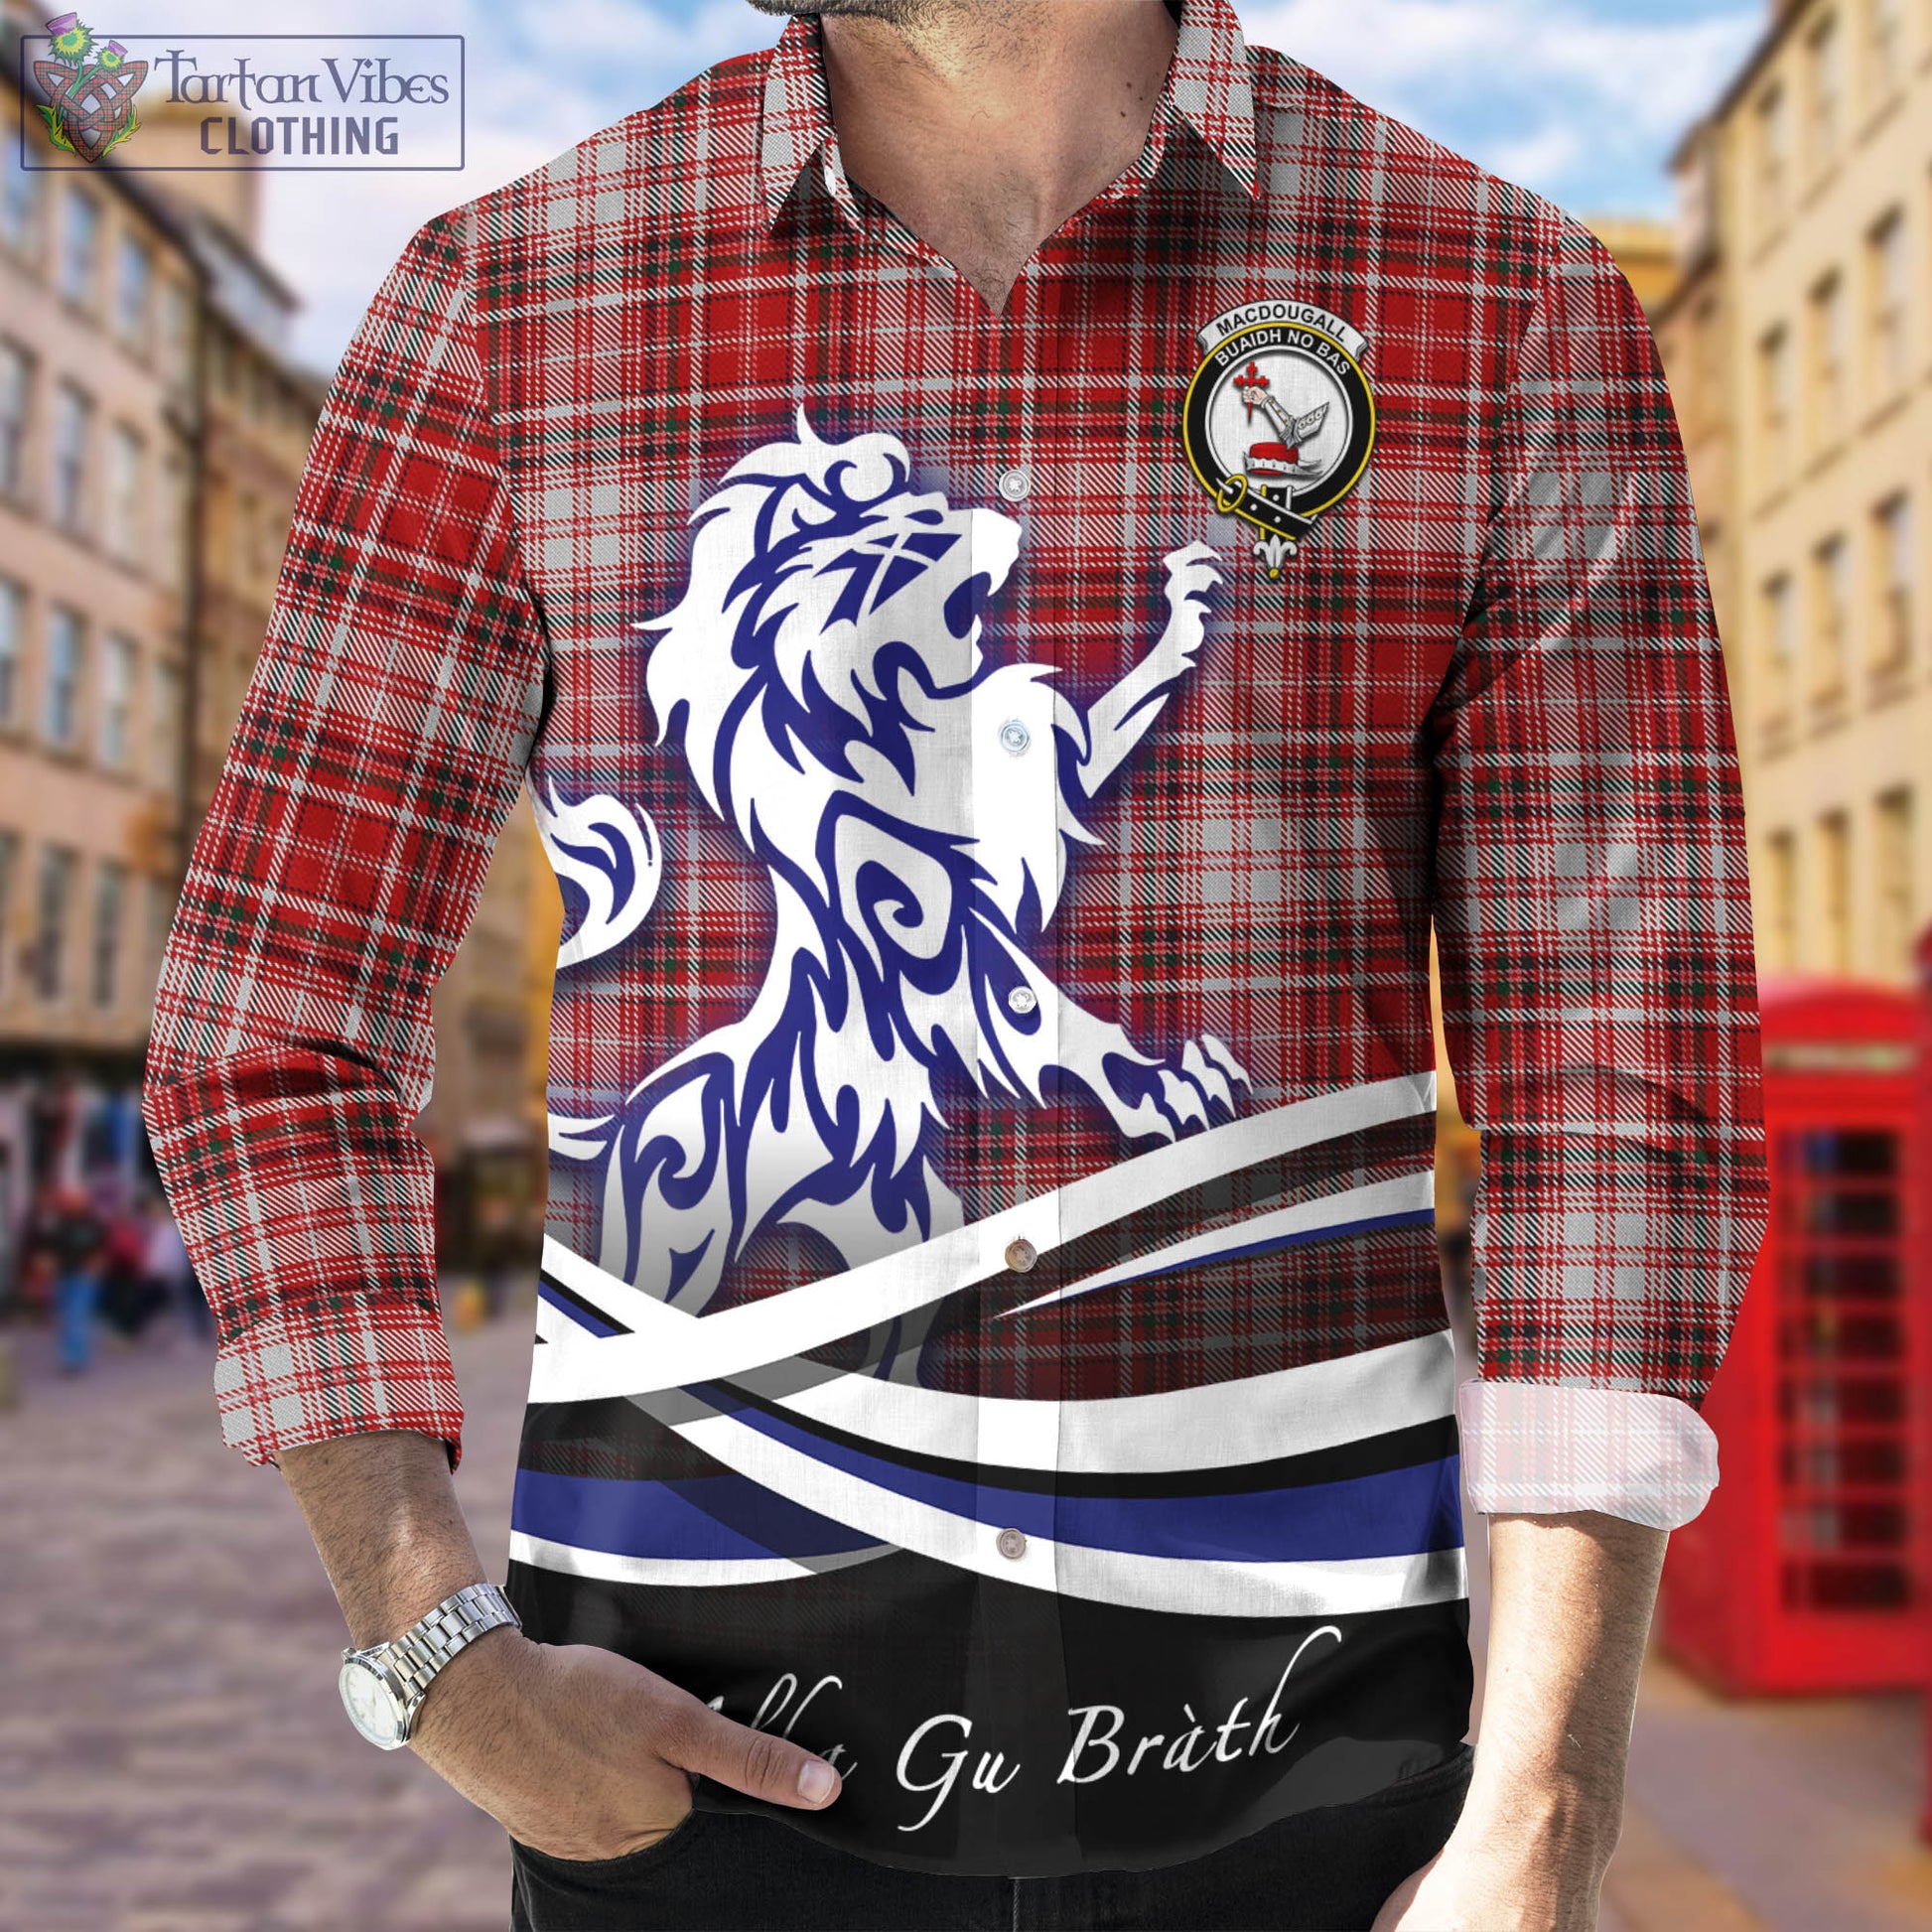 macdougall-dress-tartan-long-sleeve-button-up-shirt-with-alba-gu-brath-regal-lion-emblem